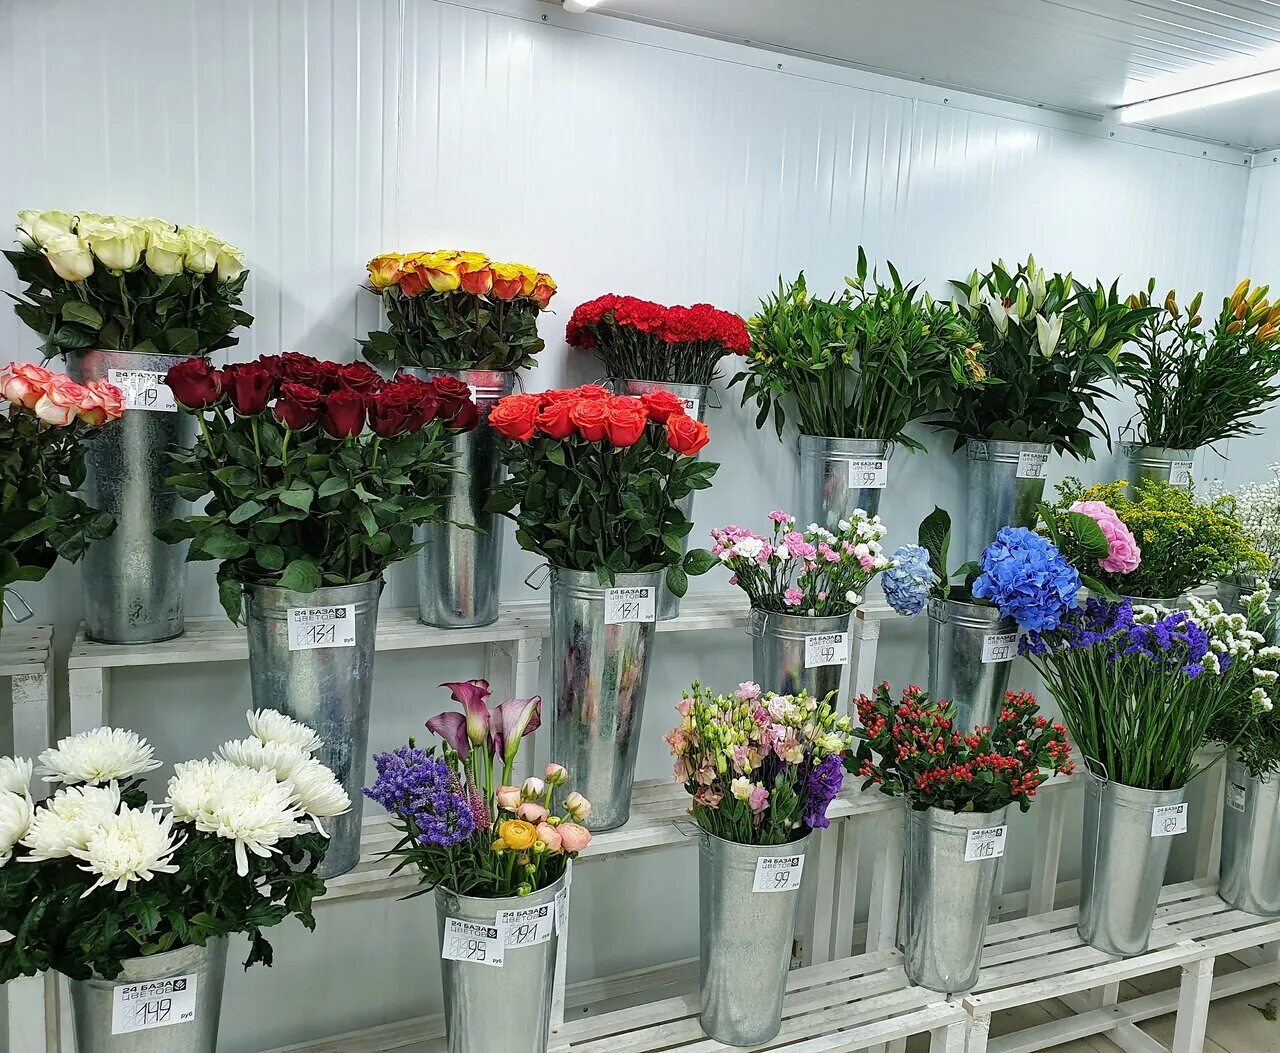 Сколько стоит гвоздика в цветочном магазине. Цветочный склад Оазис Балашиха. Цветы в магазине. Обычные цветы в цветочных магазинах. Цветочный магазин дешевый.